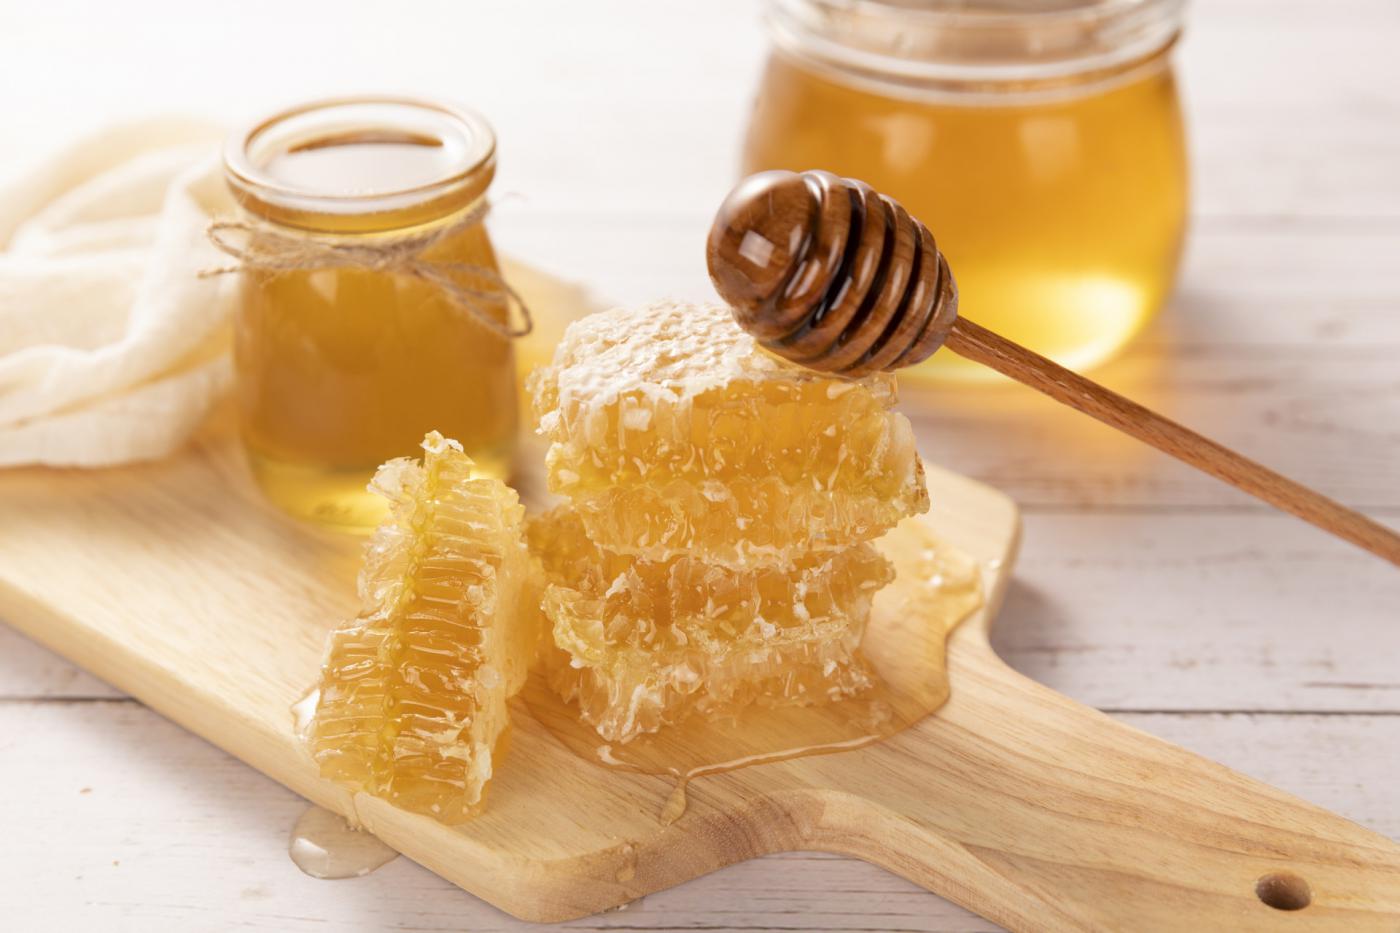 广州蜂蜜制品检测,蜂蜜制品检测费用,蜂蜜制品检测机构,蜂蜜制品检测项目